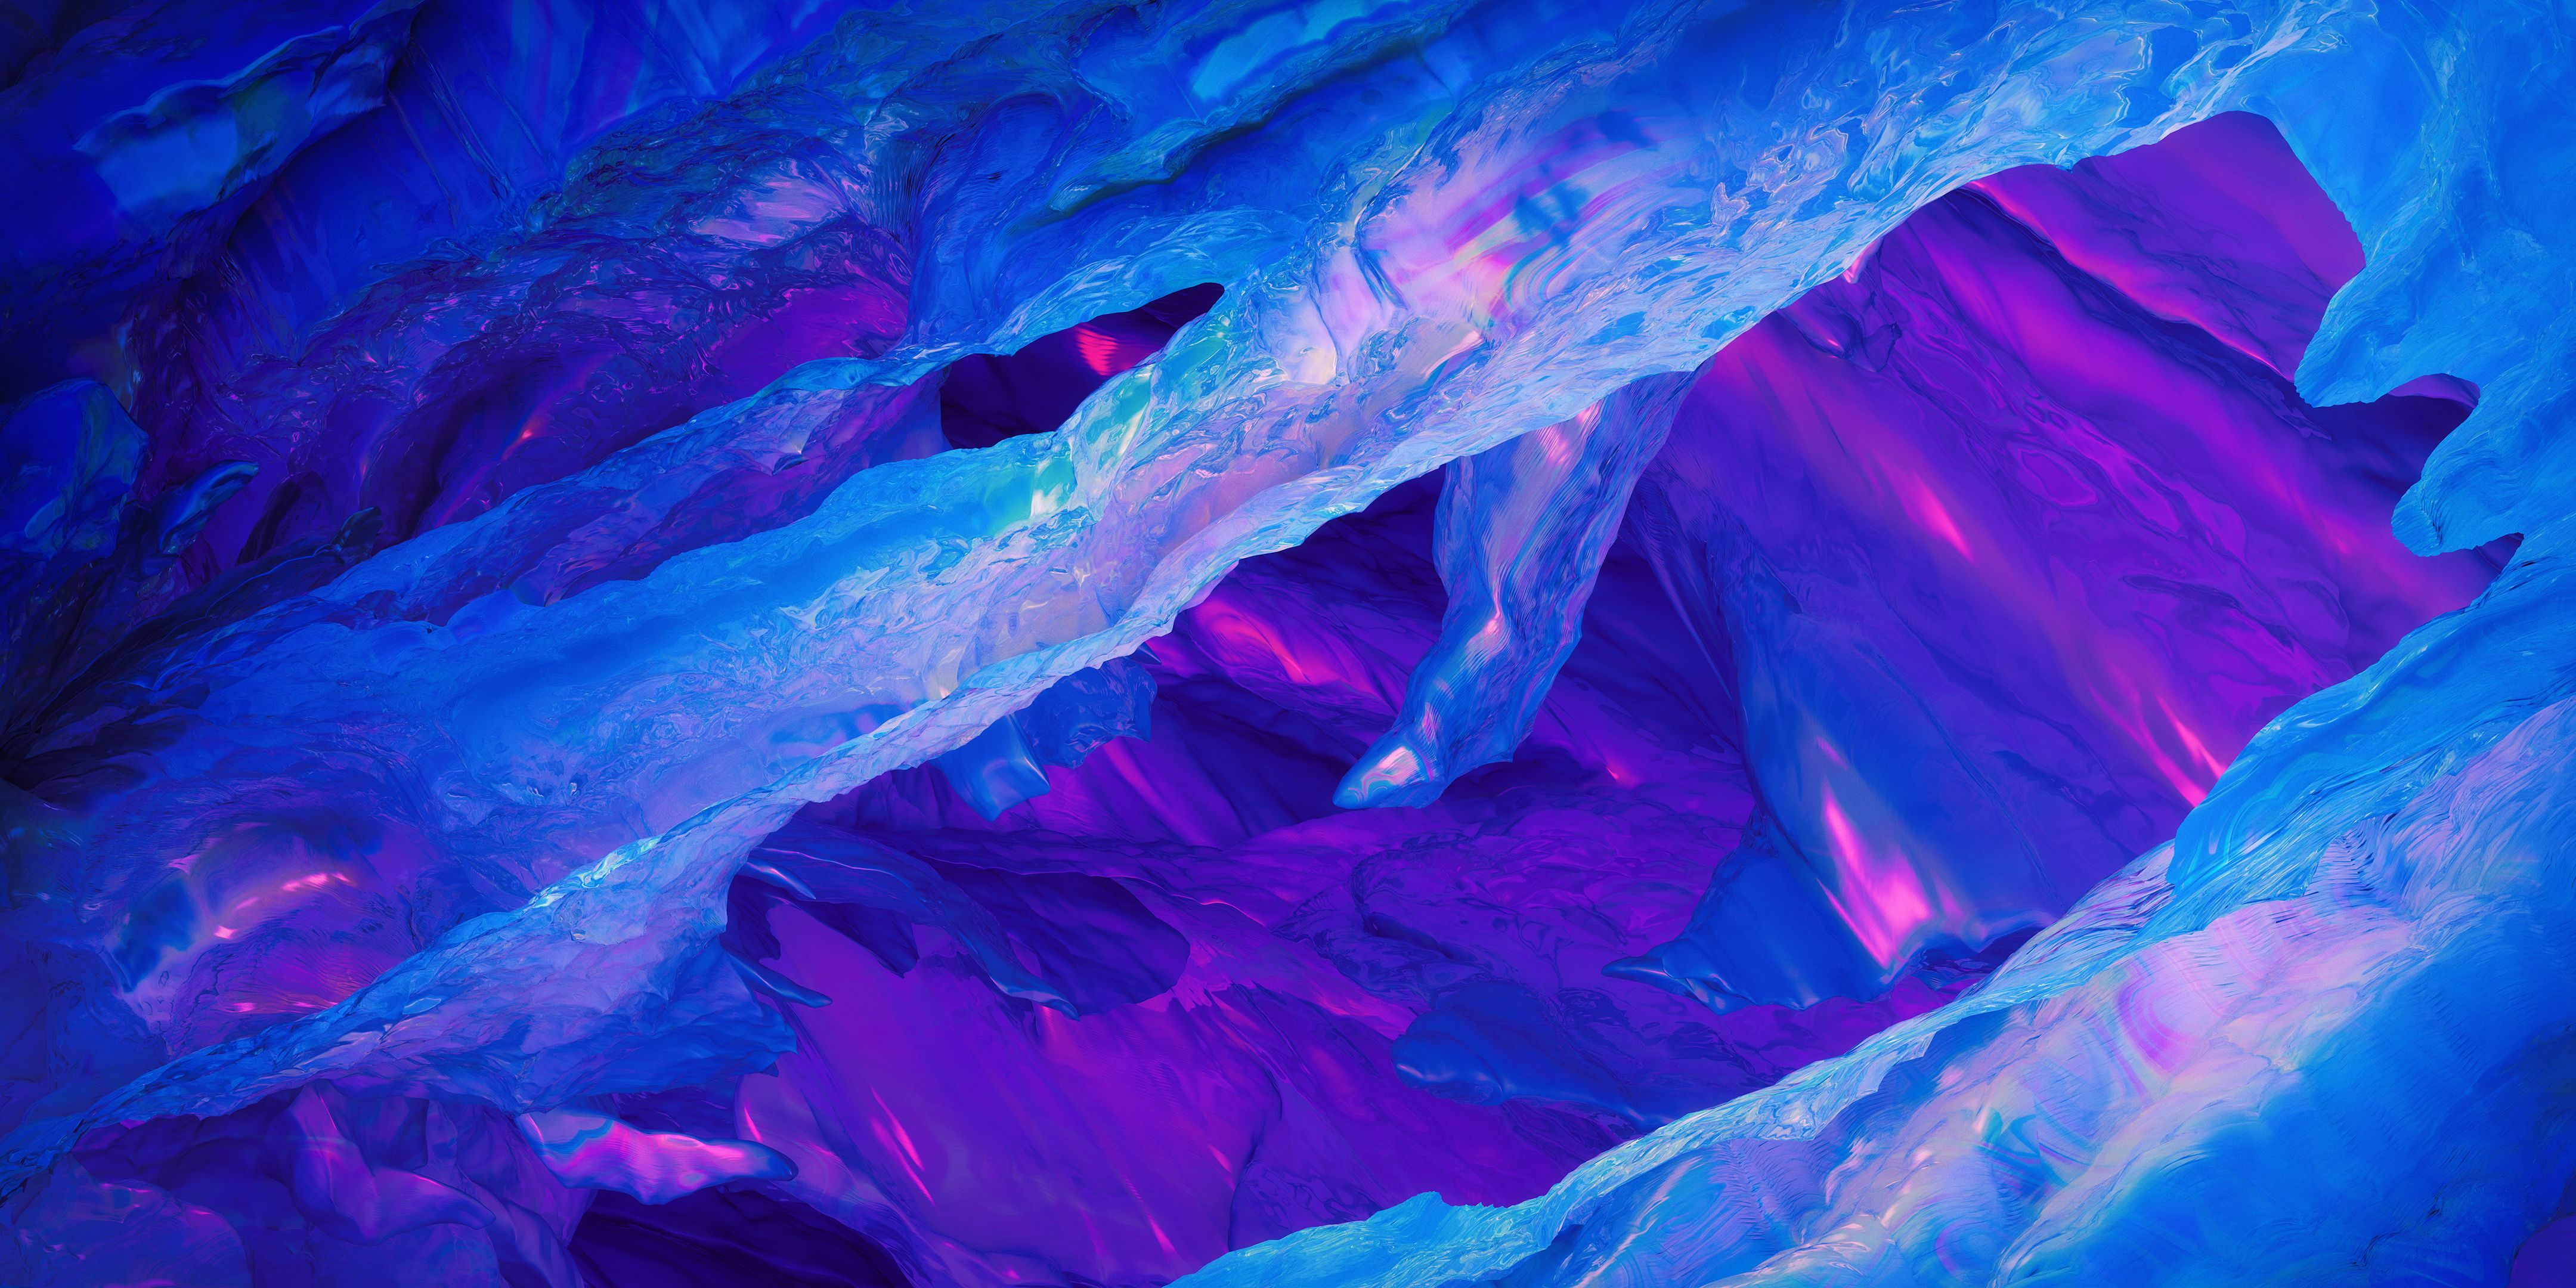 Bạn yêu thích màu sắc neon và đang tìm kiếm một hình nền phù hợp với sở thích của mình? Vào ngay trang Wallpaper Cave và khám phá những hình nền PC neon màu hồng và xanh 4k đầy sắc màu. Các hình nền này sẽ giúp bạn tạo ra một không gian làm việc và giải trí thật độc đáo và ấn tượng.